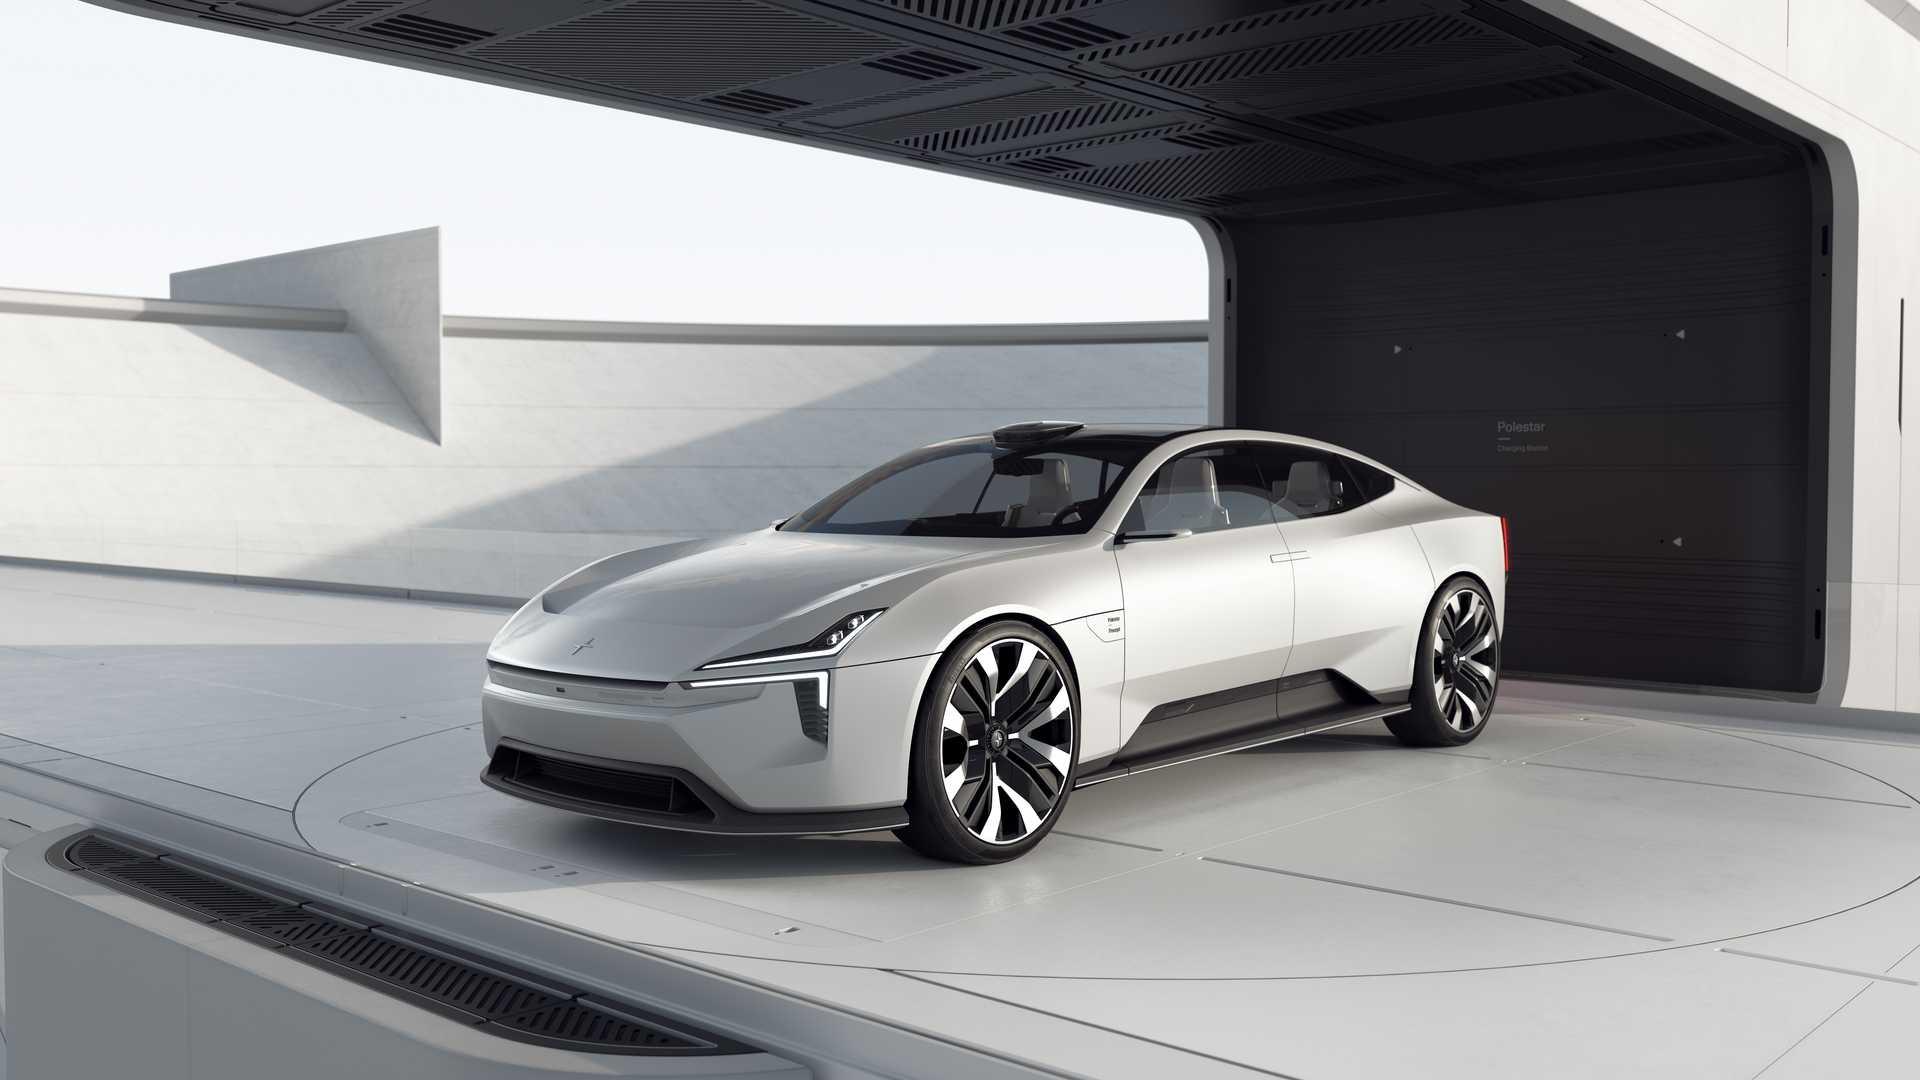 ส่อง Polestar Precept Concept รถยนต์ไฟฟ้าต้นแบบที่ห้องโดยสารตกแต่งด้วยวัสดุรีไซเคิล